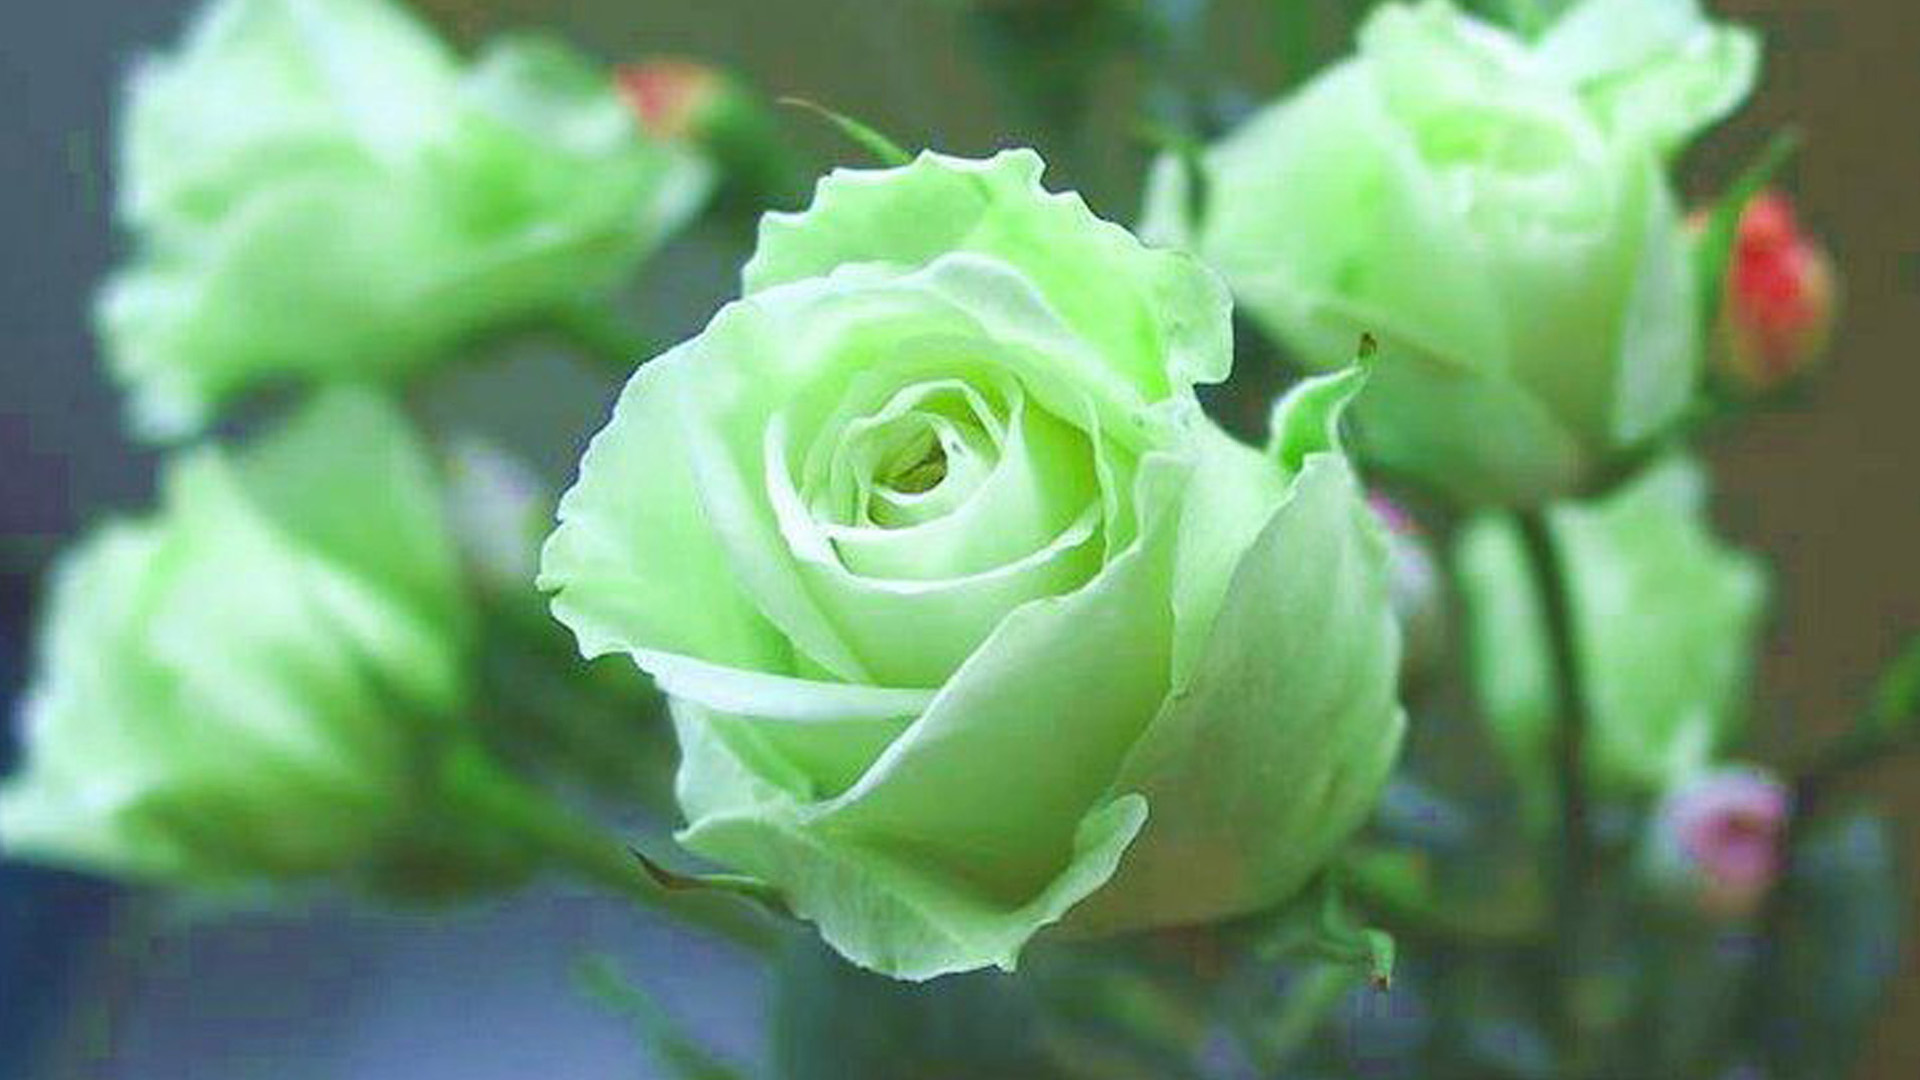 41-412875_green-rose-wallpaper-green-rose-flower-images-hd.jpg.